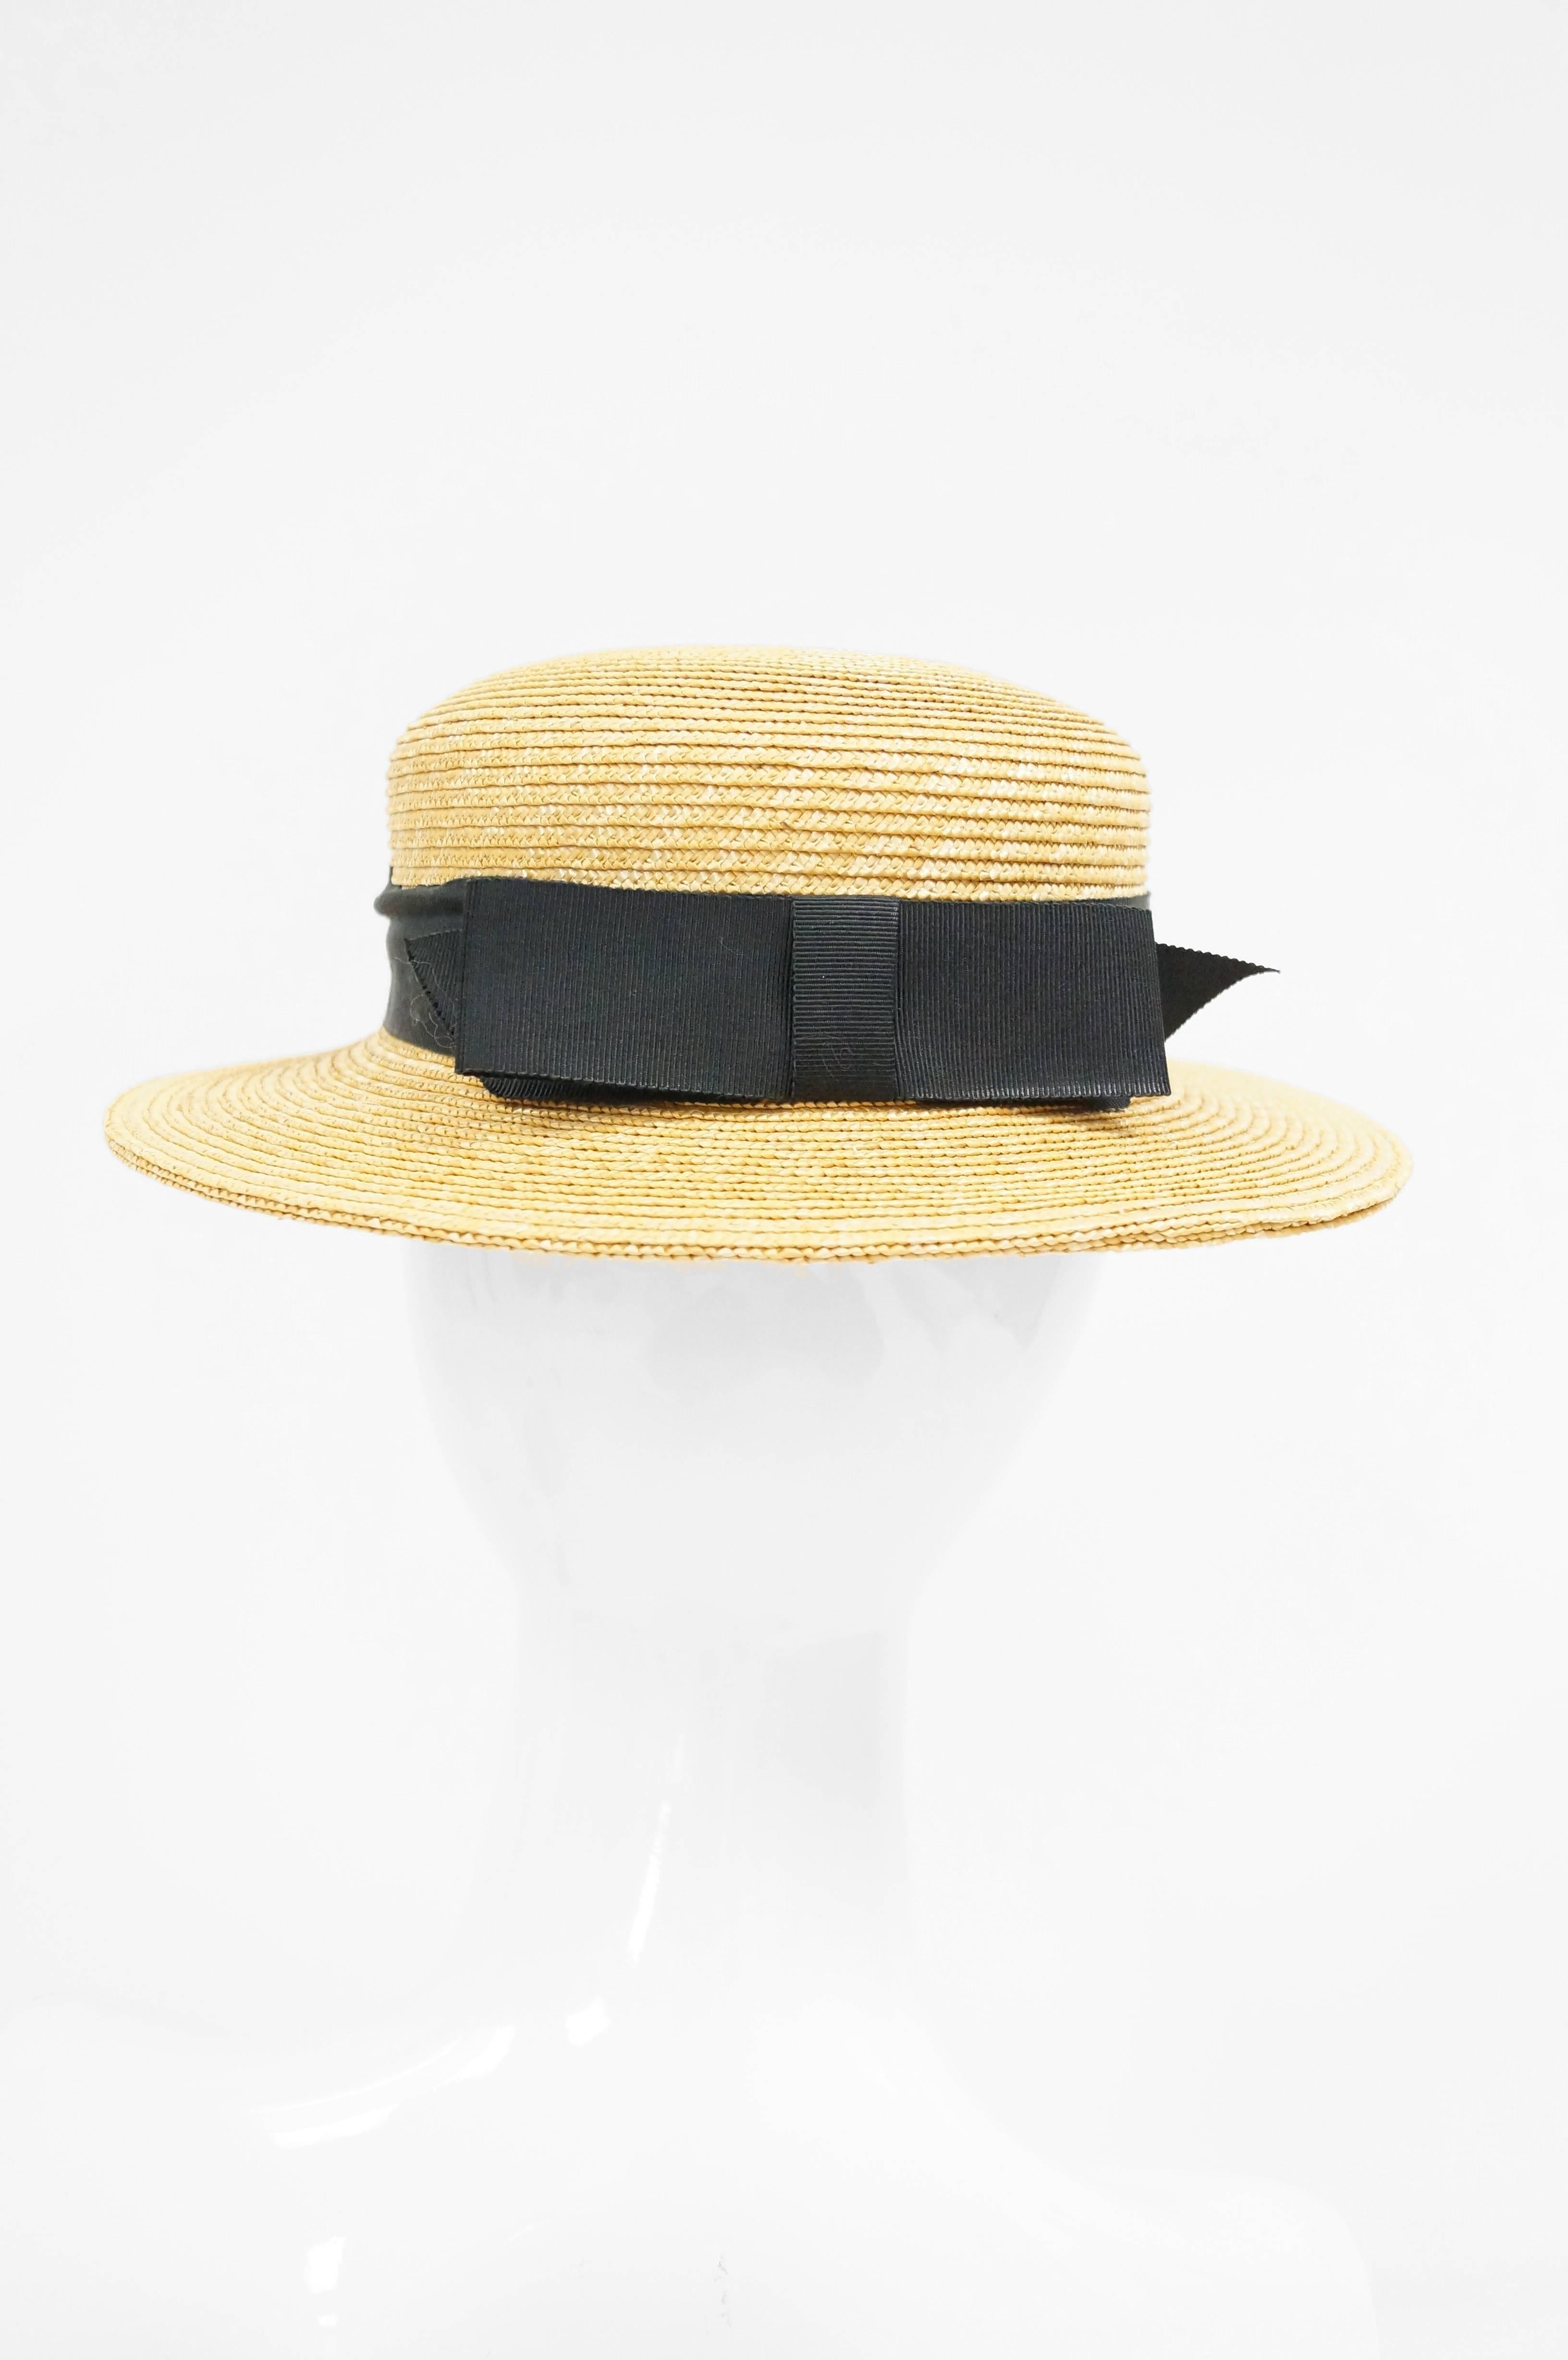 White Rare 1980s Yves Saint Laurent Straw Boater Hat